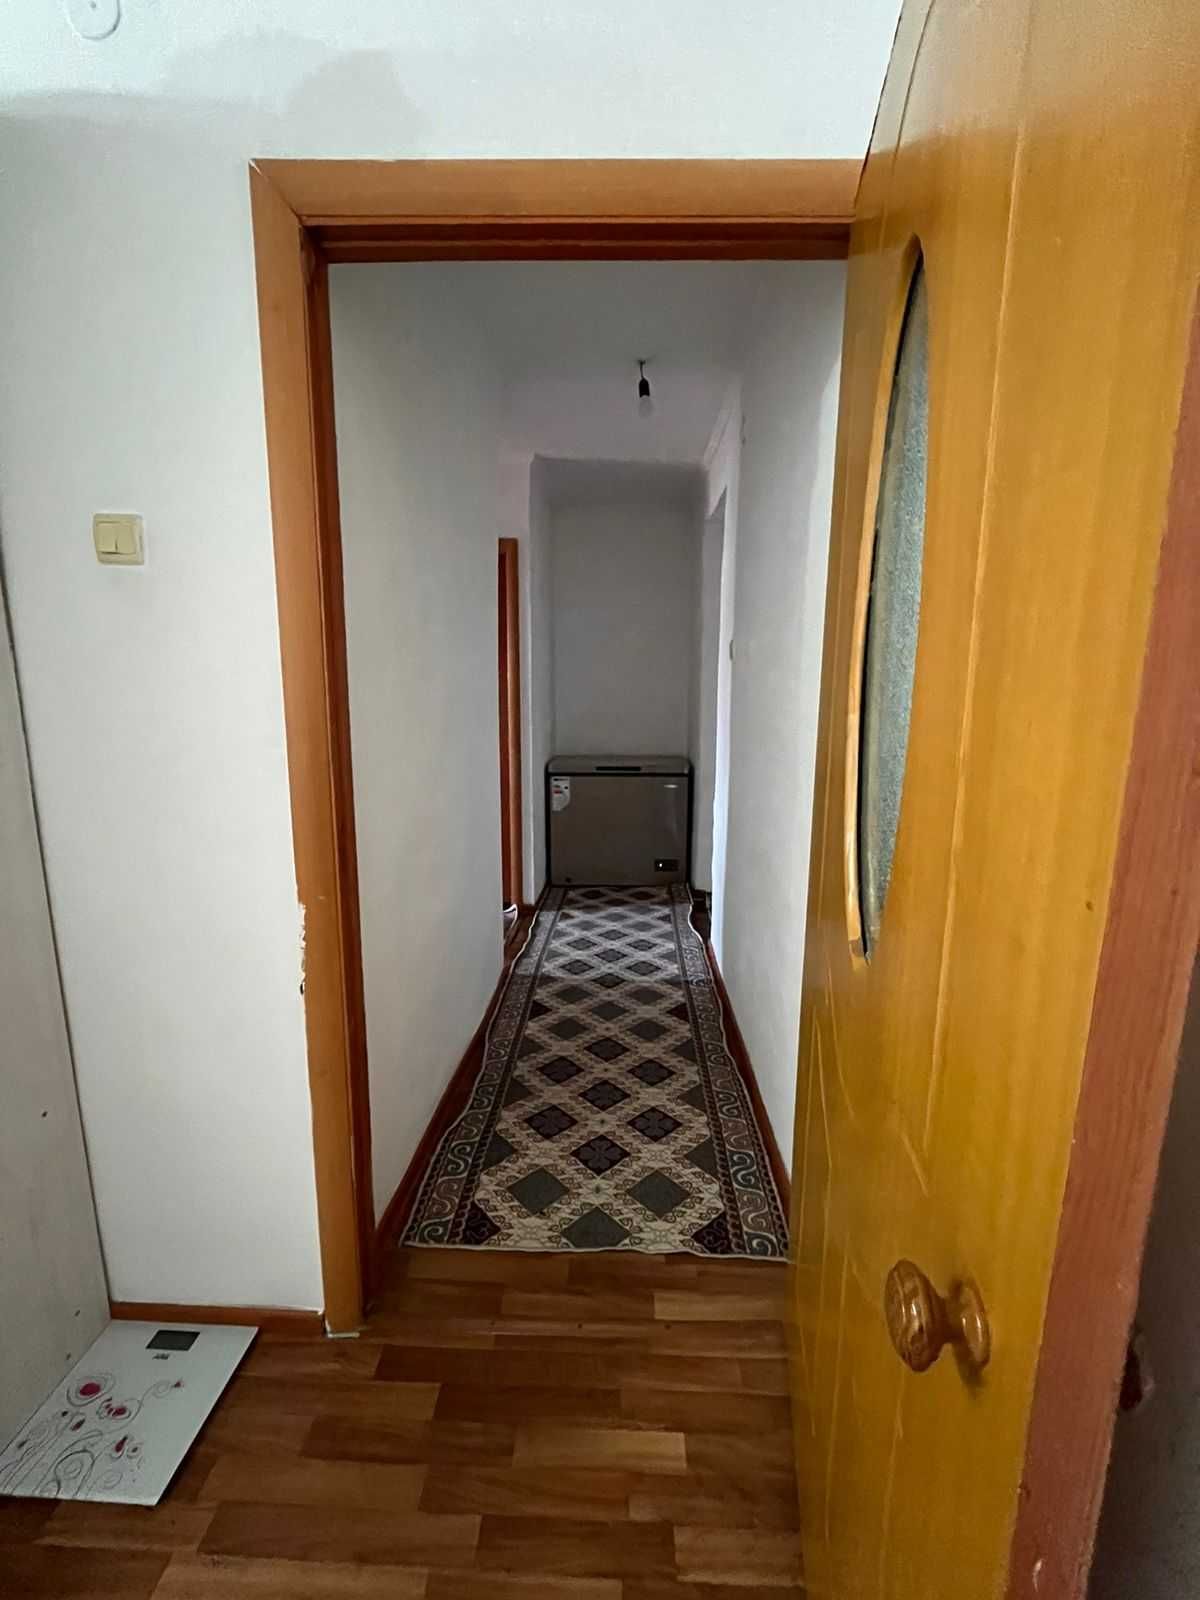 Продается 2-х комнатная квартира в центре Карабулак Ескельдинский р-н